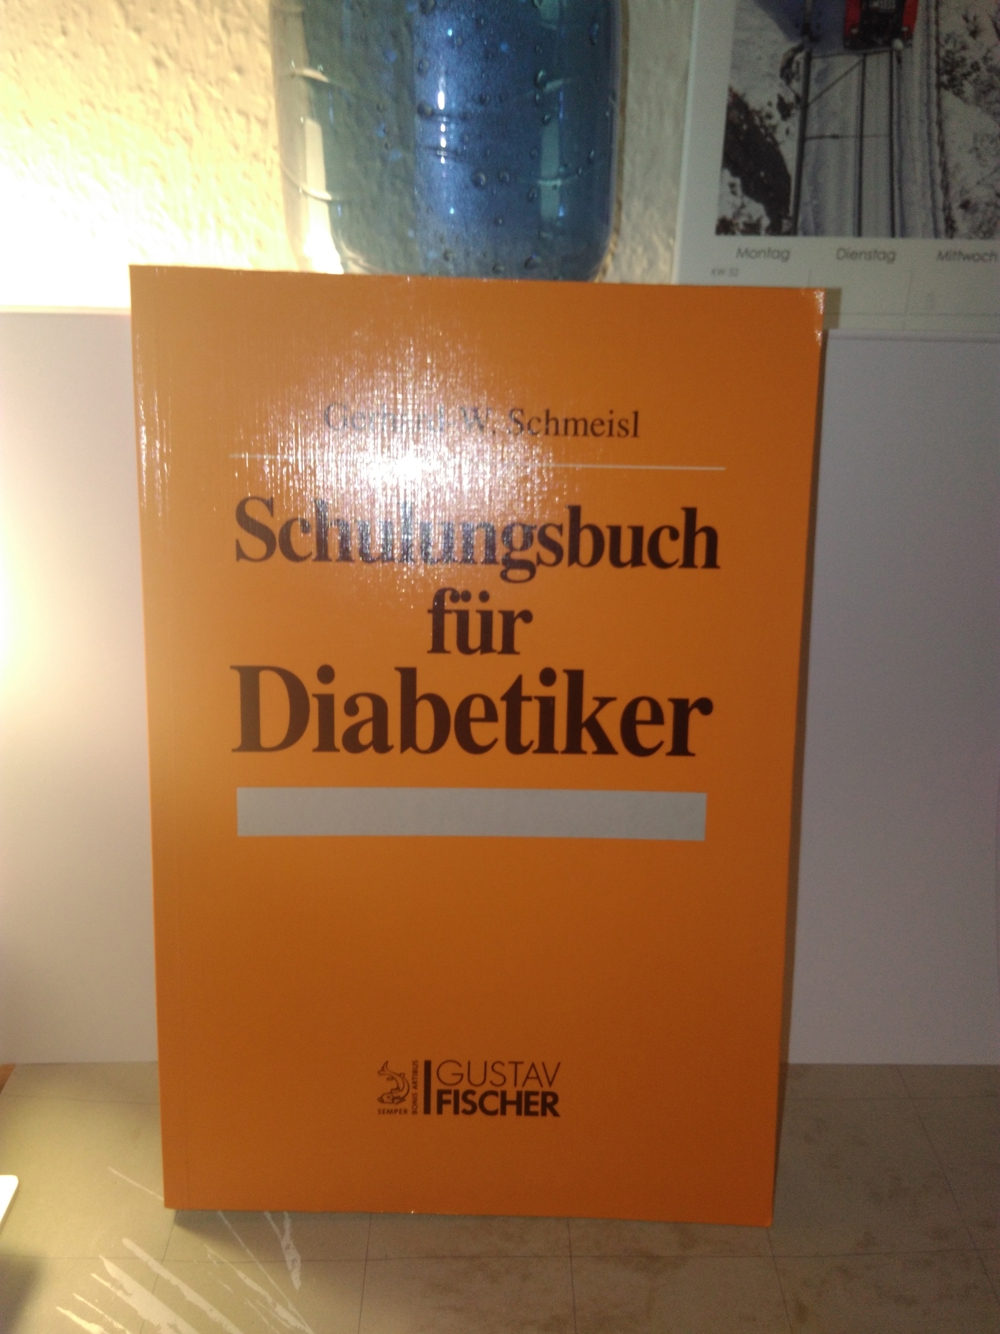 Schulungsbuch Diabetes von Gerhard-Walter Schmeisl (Buch)